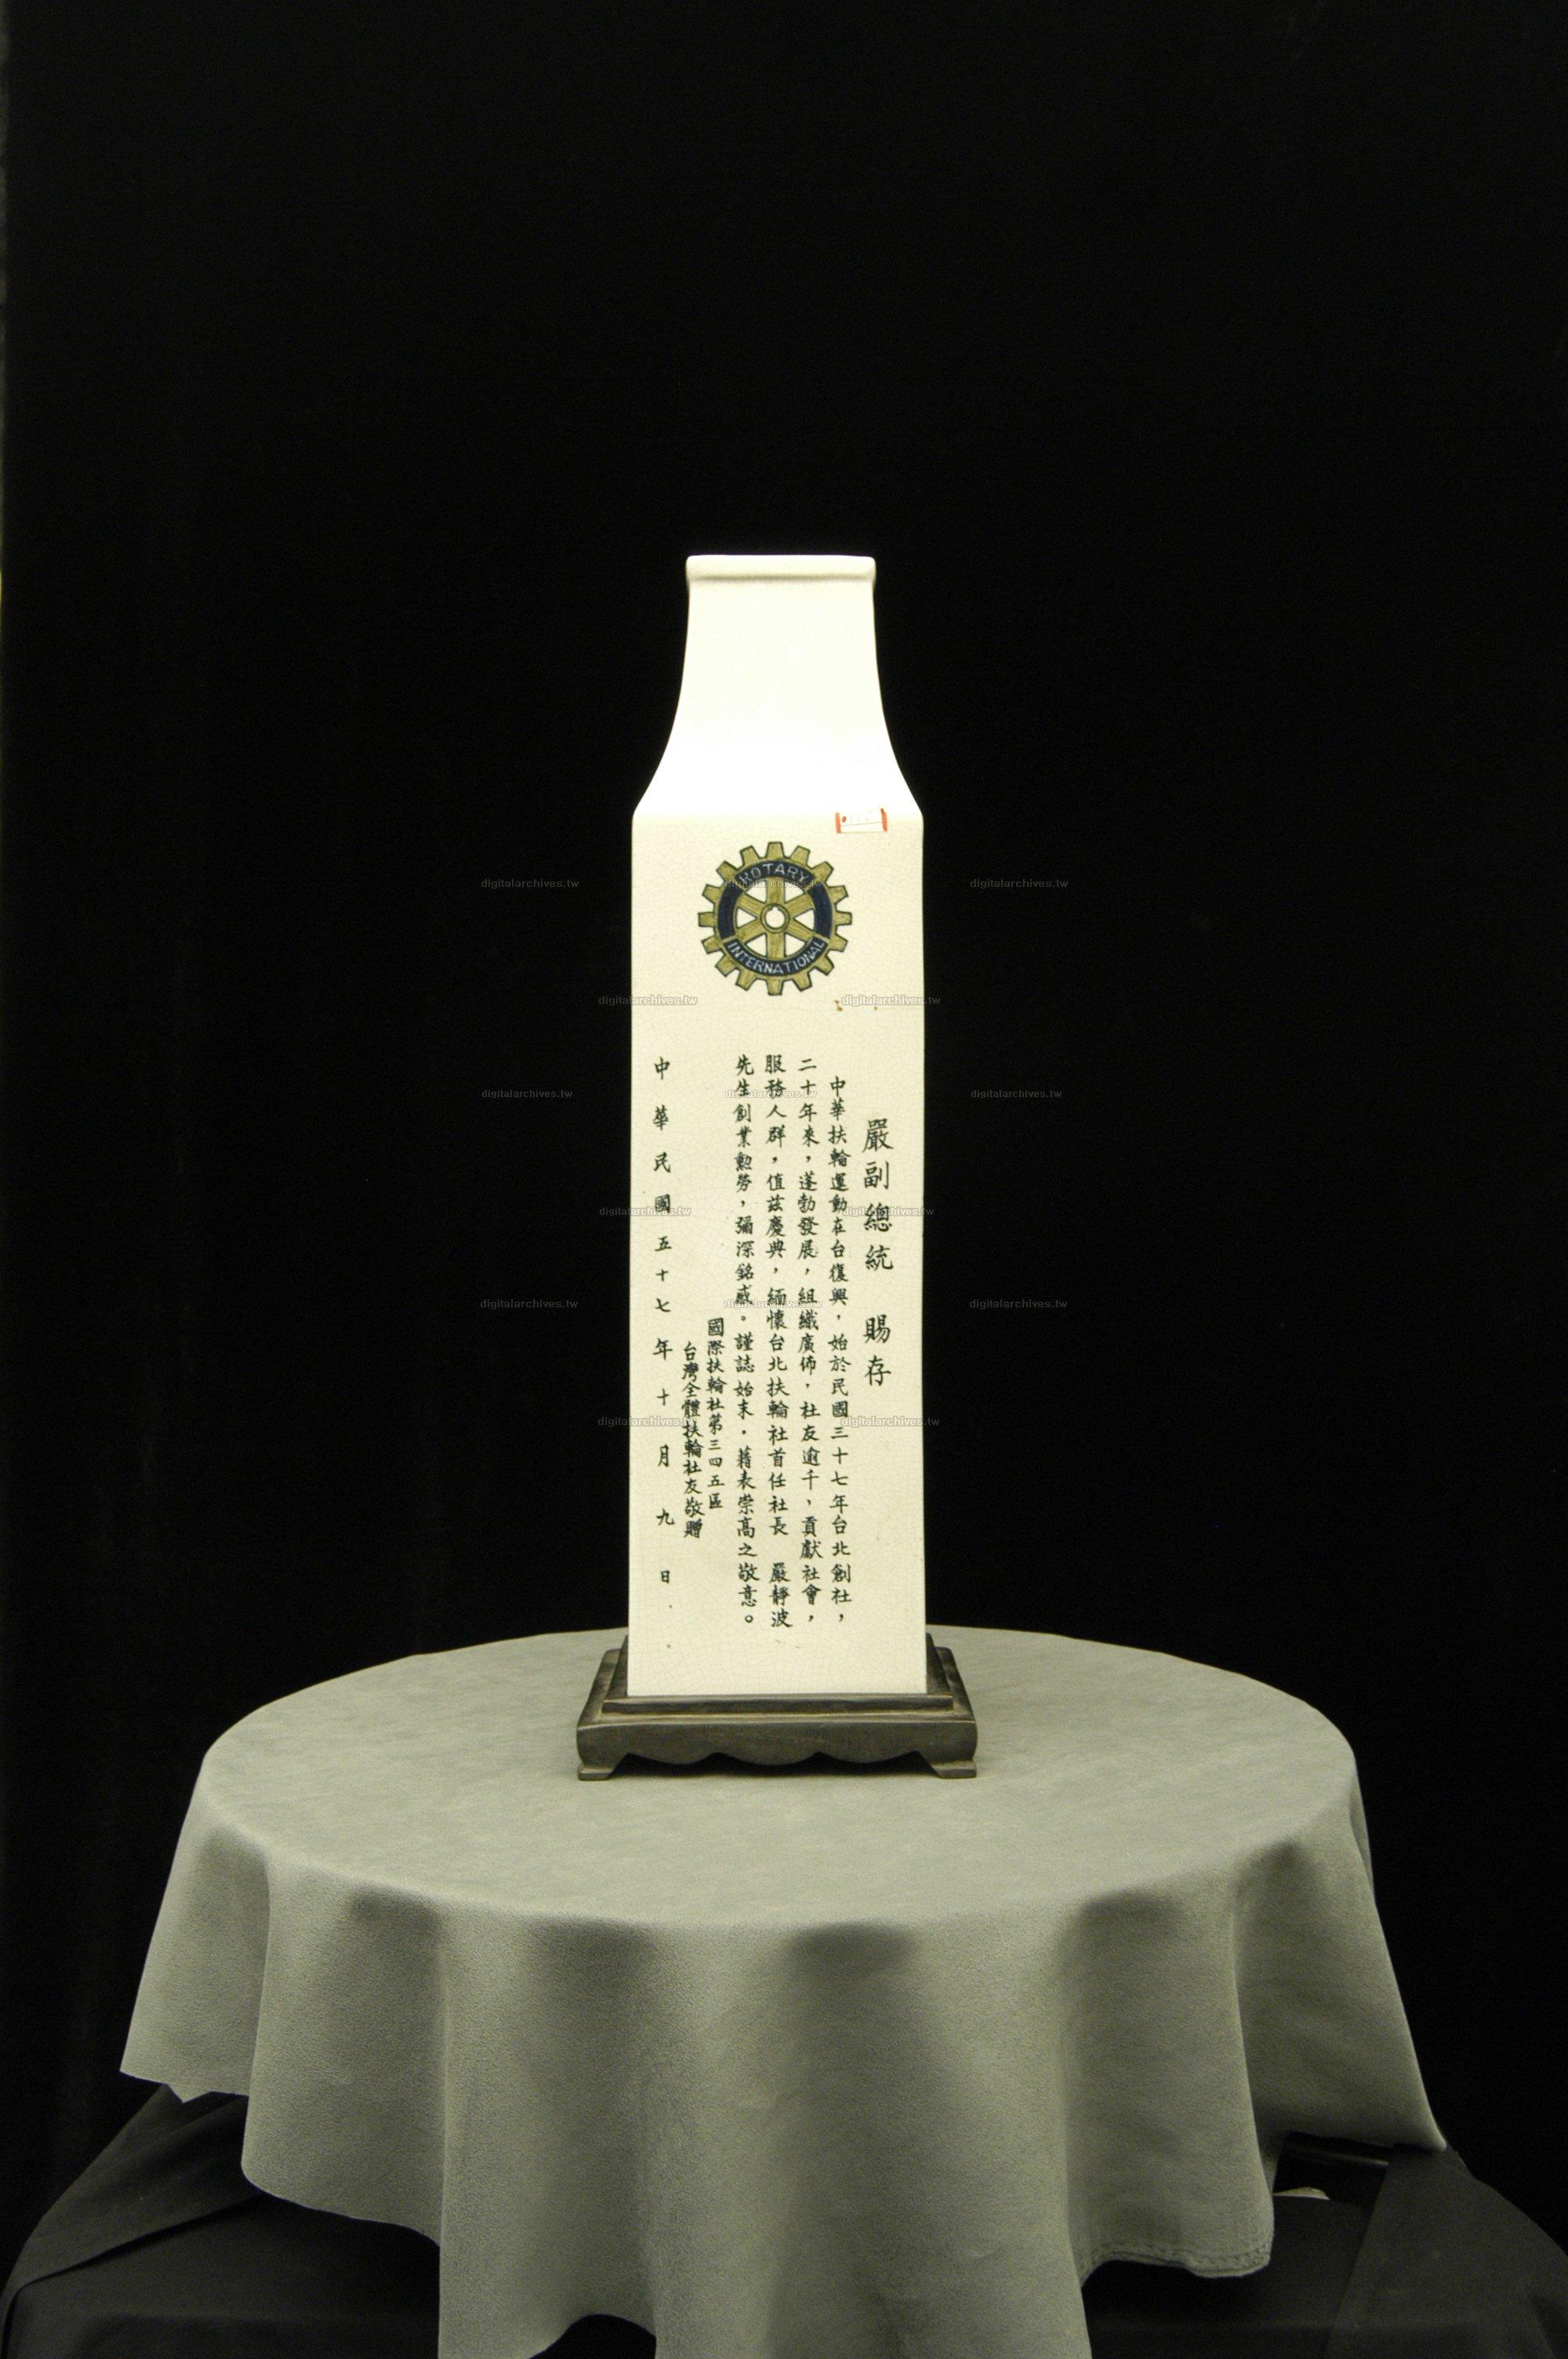 藏品名稱:彩繪方形瓷瓶(入藏登錄號006000000038C)件名:彩繪方形瓷瓶